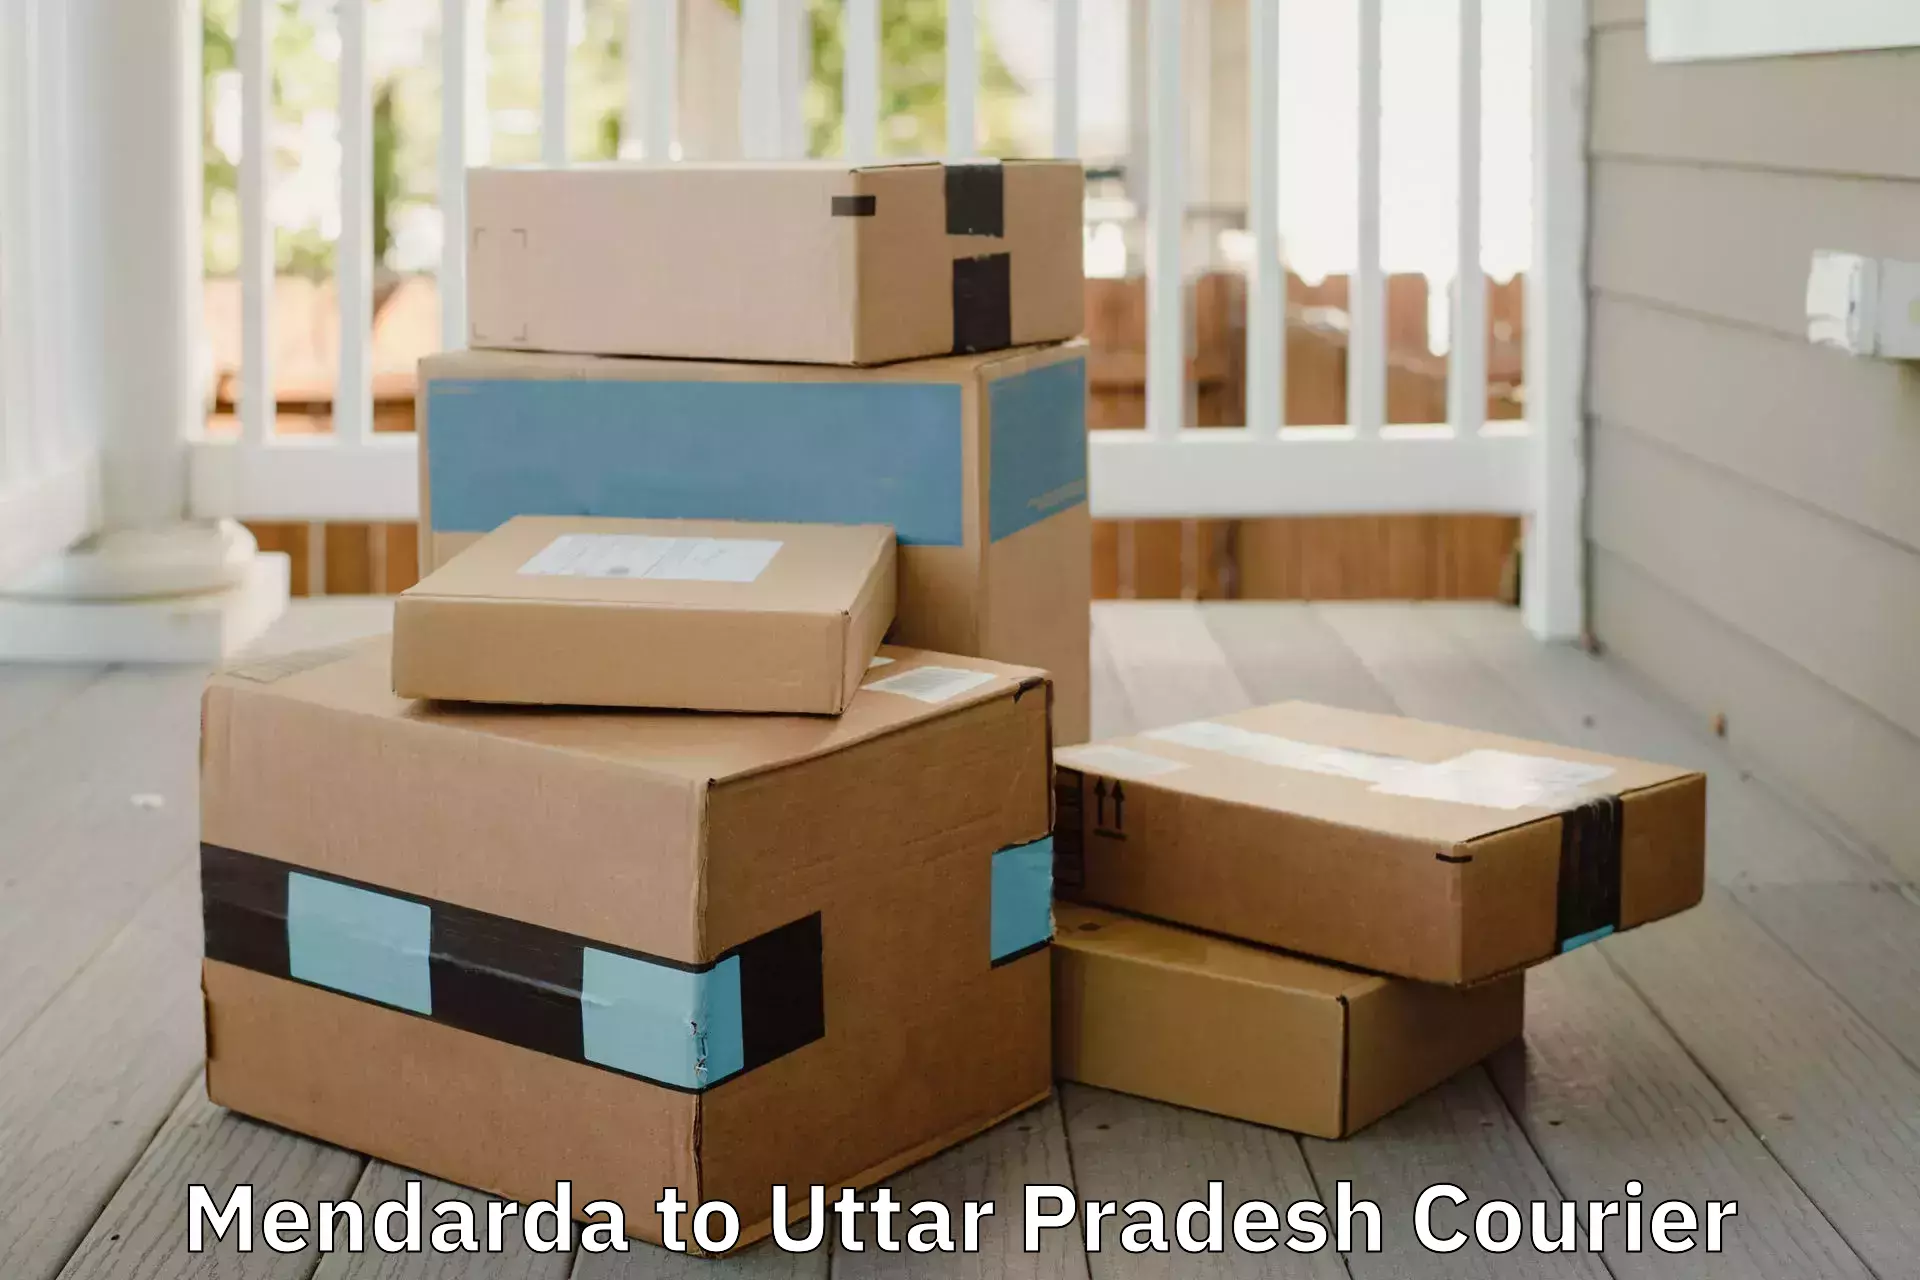 Affordable moving solutions Mendarda to Uttar Pradesh